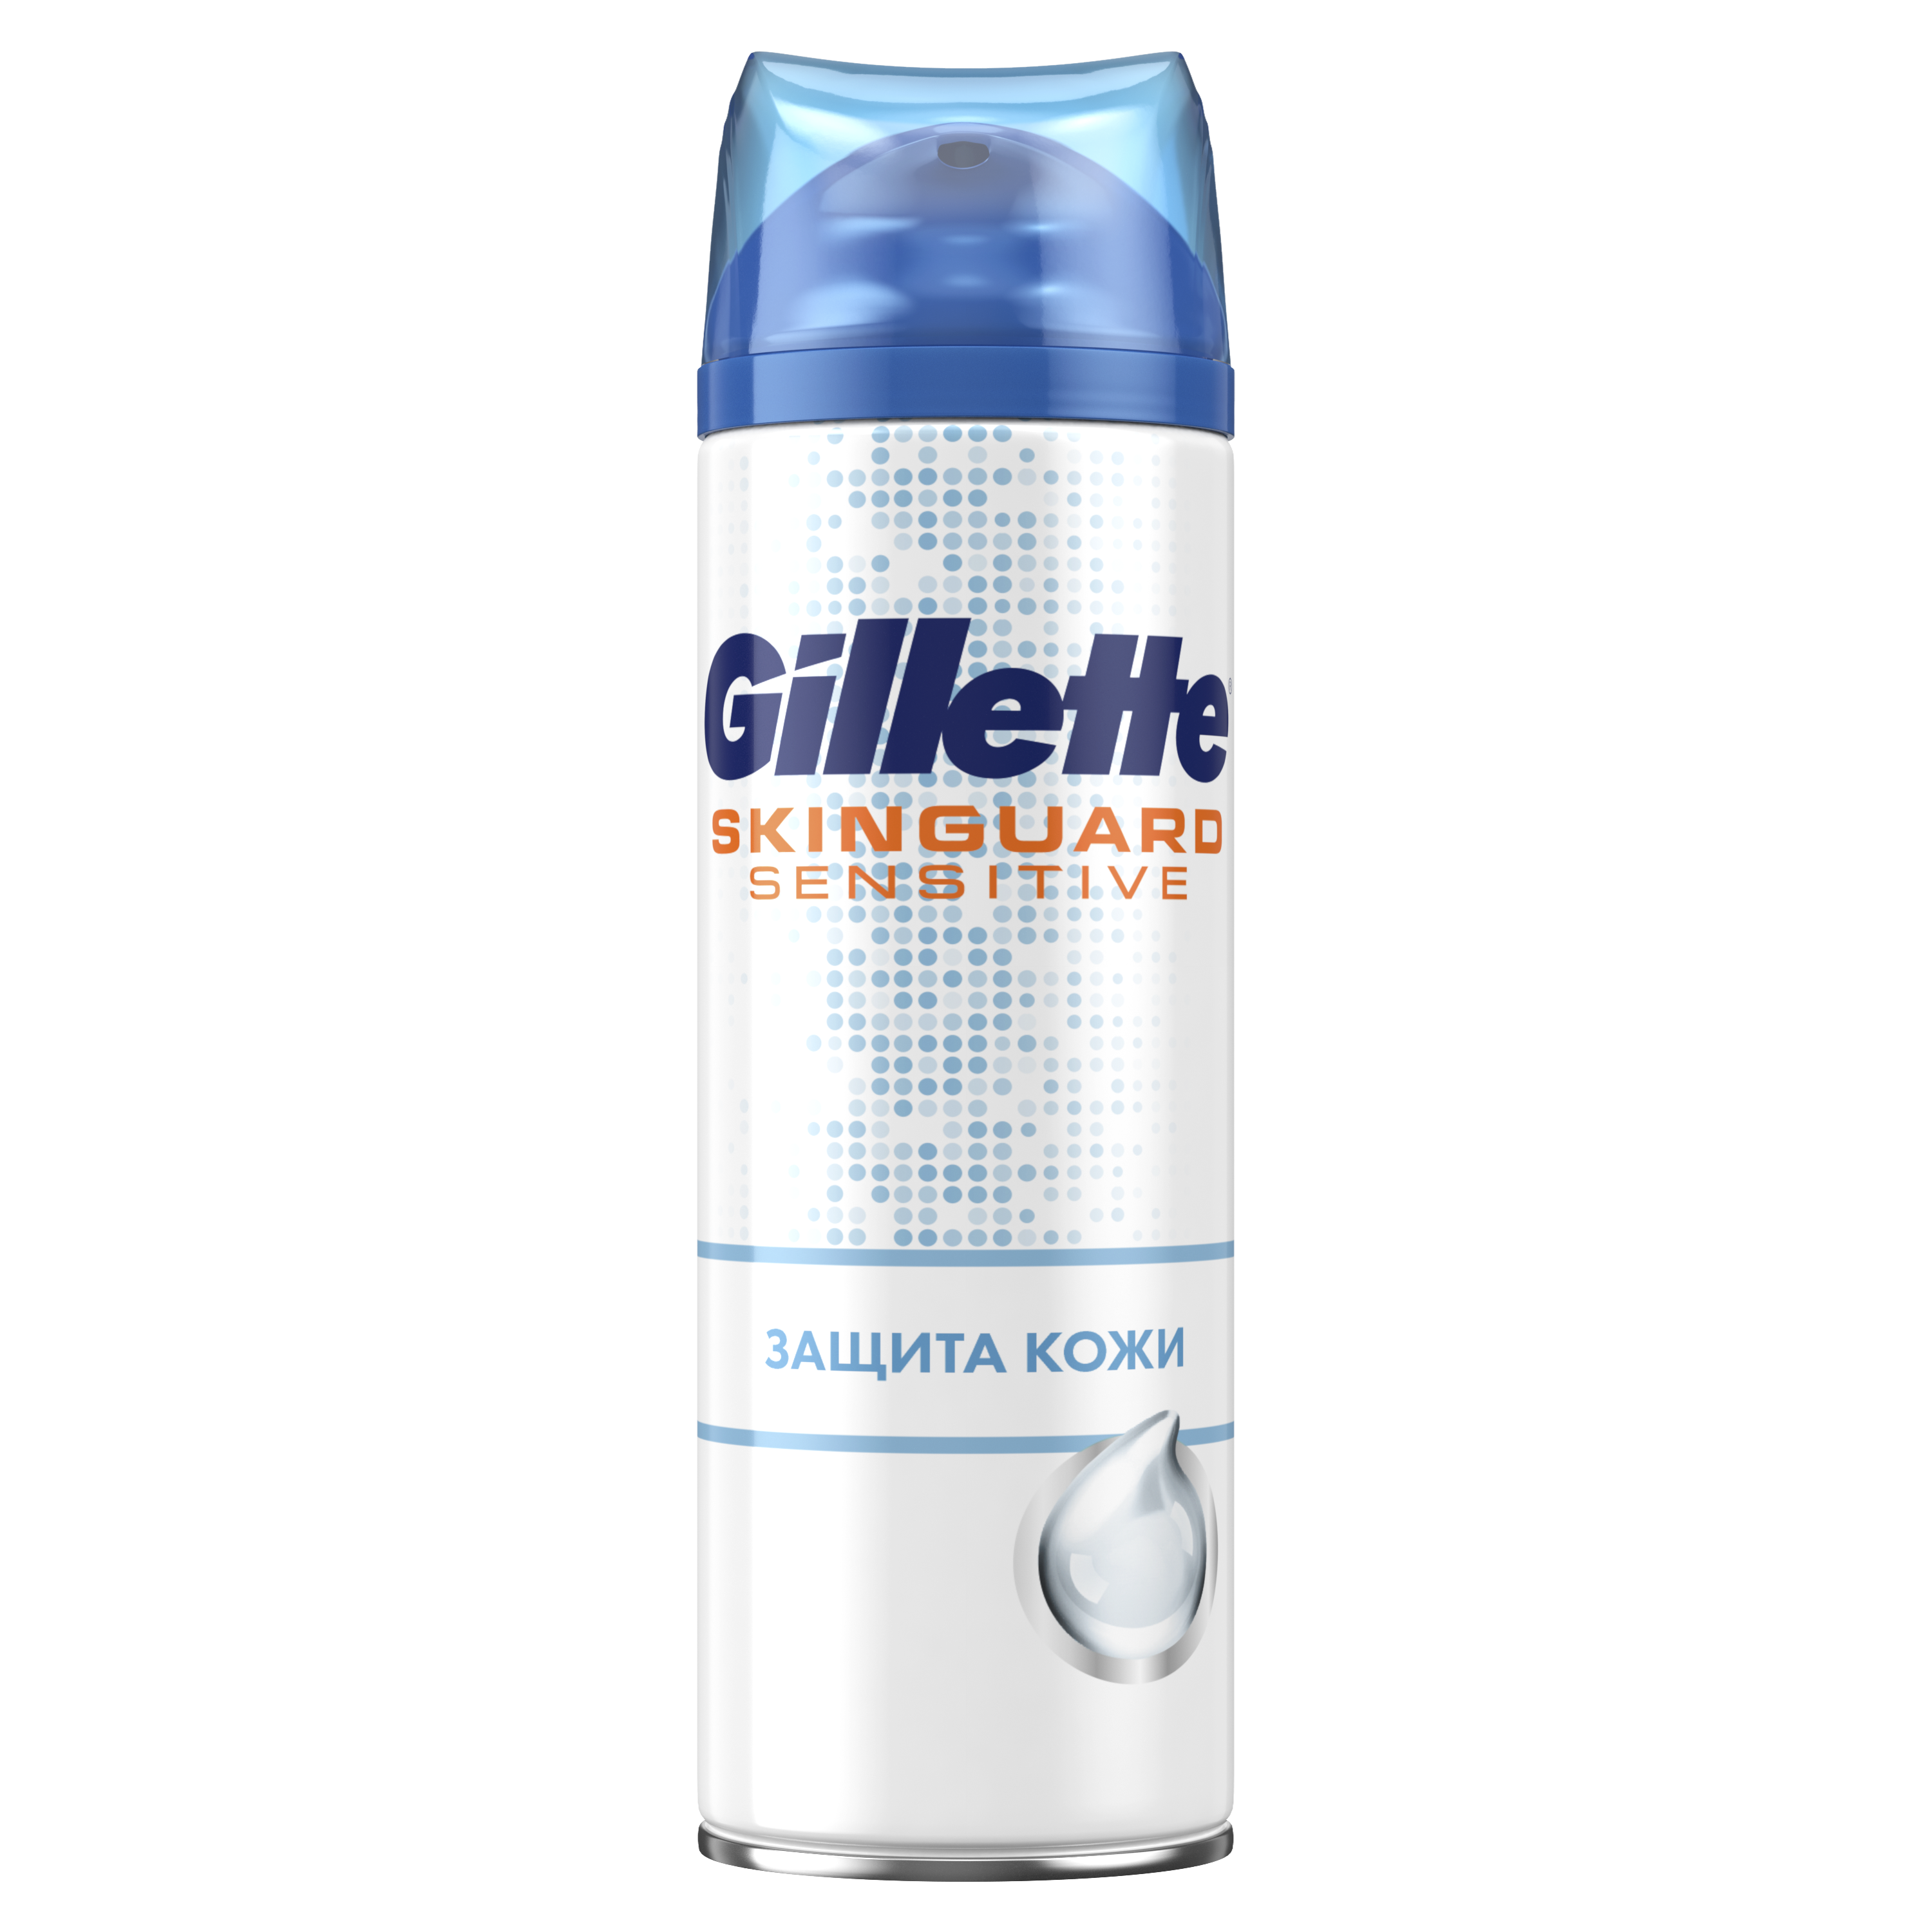 Гель для бритья Gillette Skinguard Sensitive Защита кожи, 200 мл - фото 1